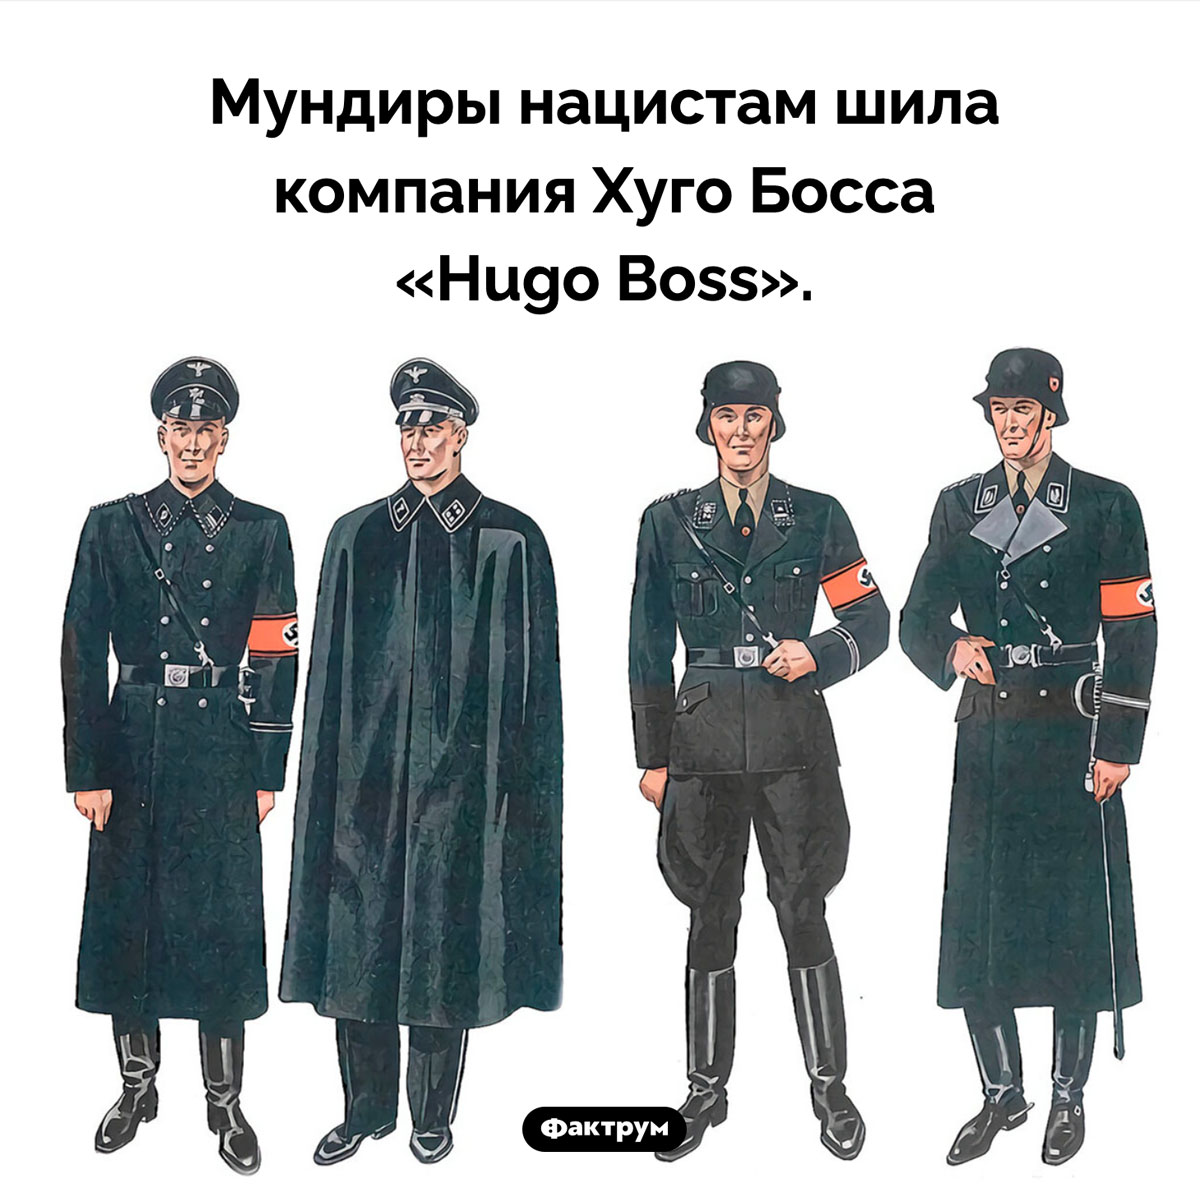 Кто шил форму нацистов. Мундиры нацистам шила компания Хуго Босса «Hugo Boss».